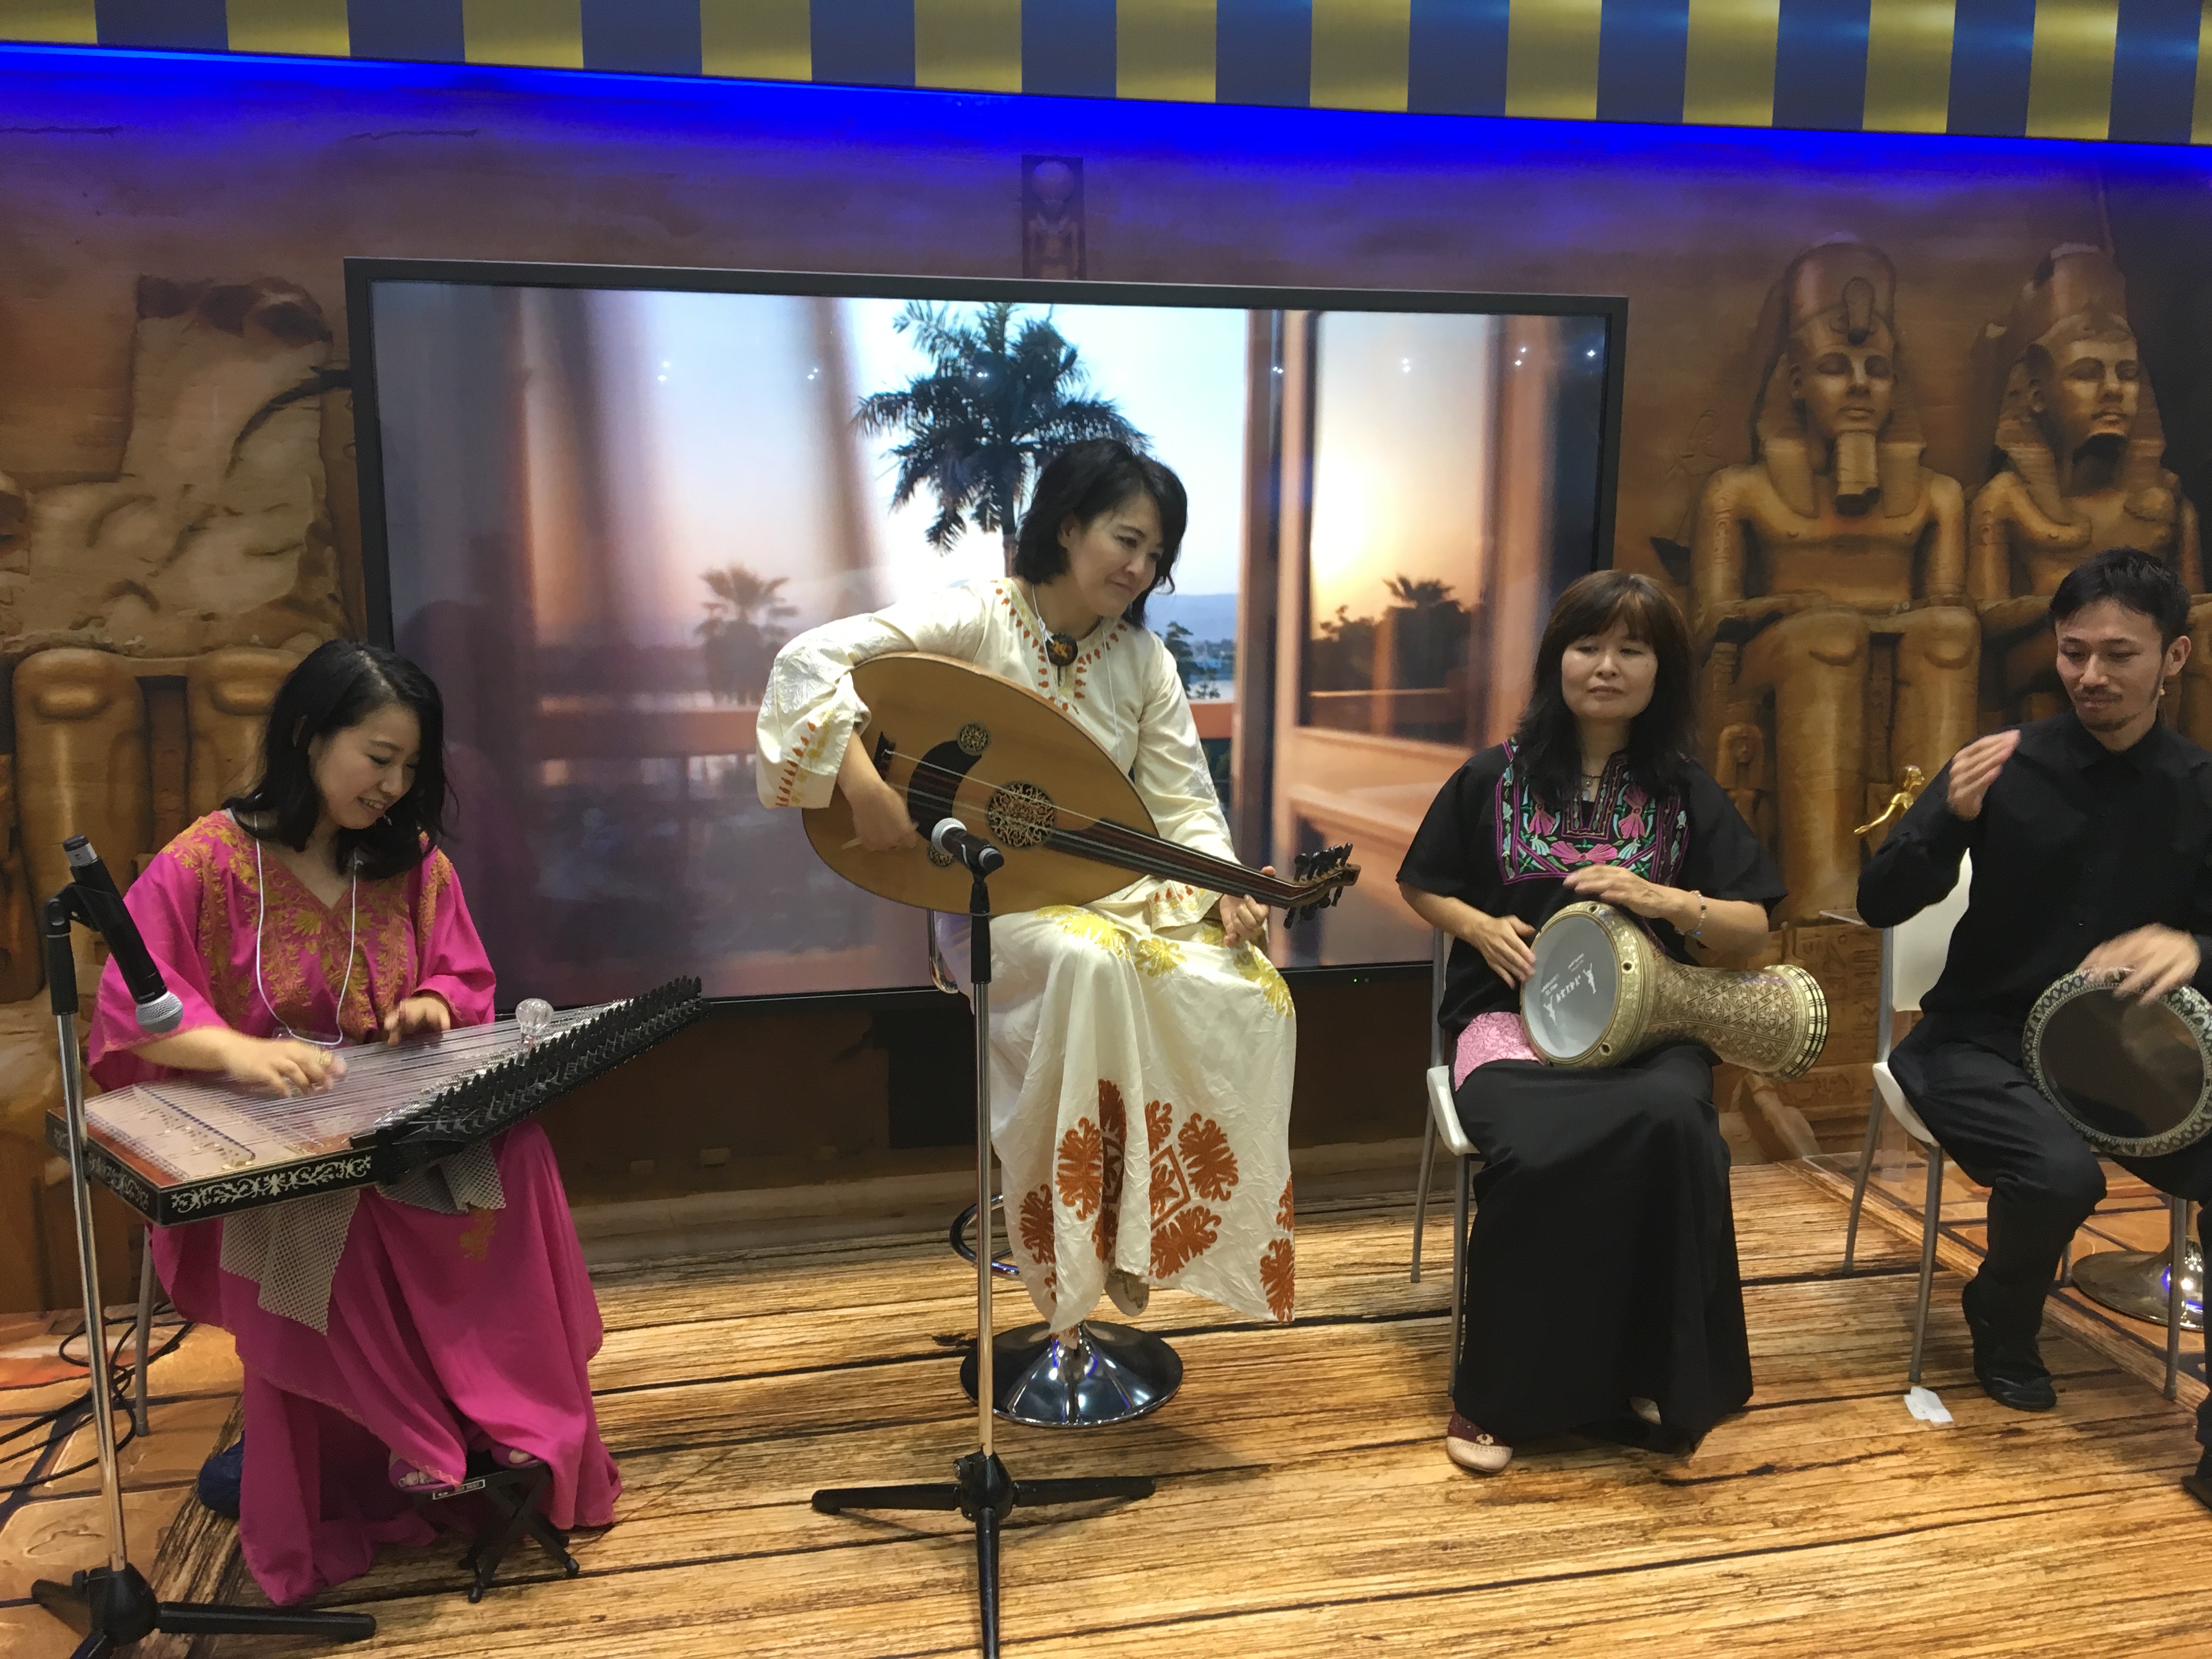 Pertunjukan Muzik Oriental semasa pameran Travel Trade di Jepun